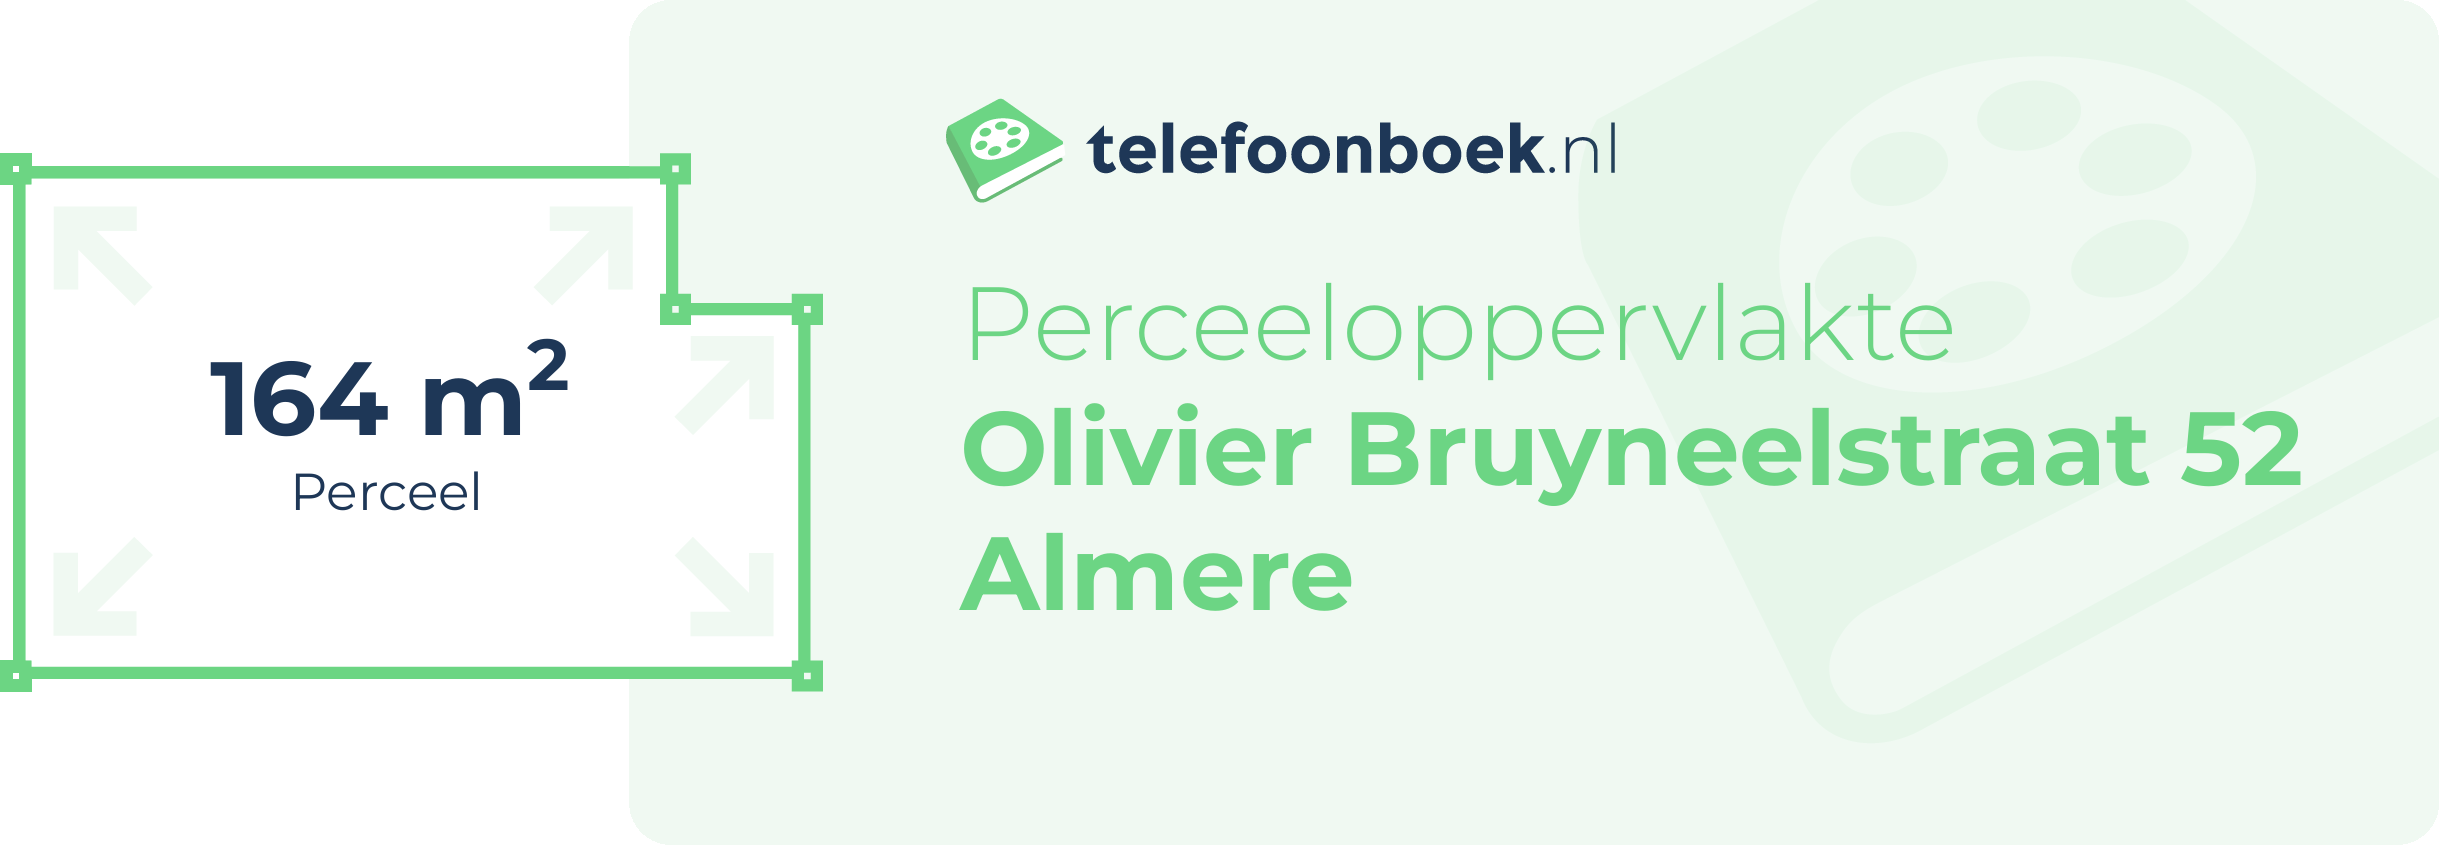 Perceeloppervlakte Olivier Bruyneelstraat 52 Almere